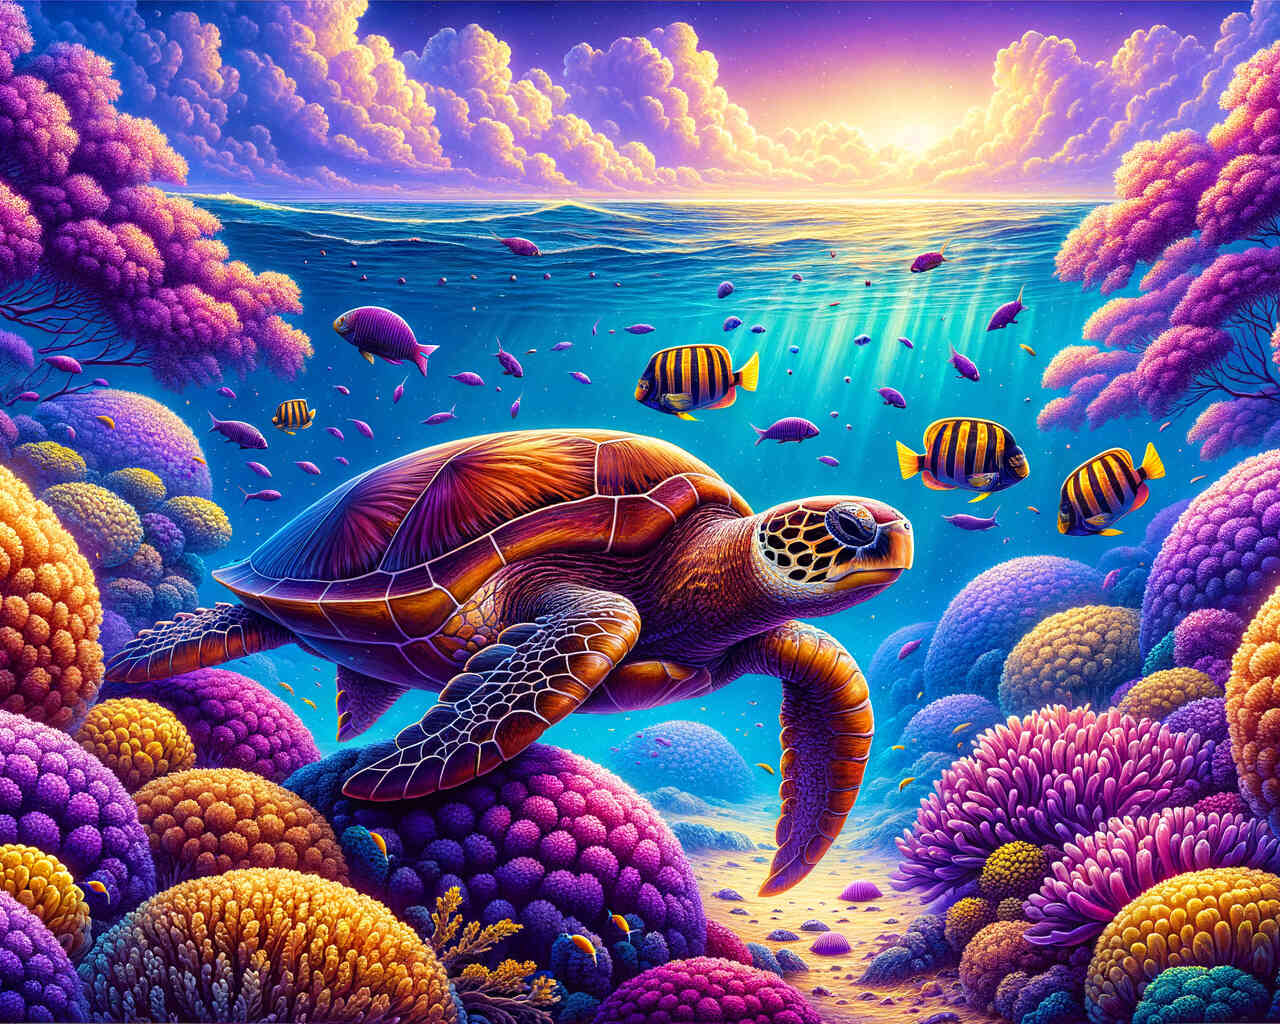 Diamond Painting - Schildkröte in Lila Korallen